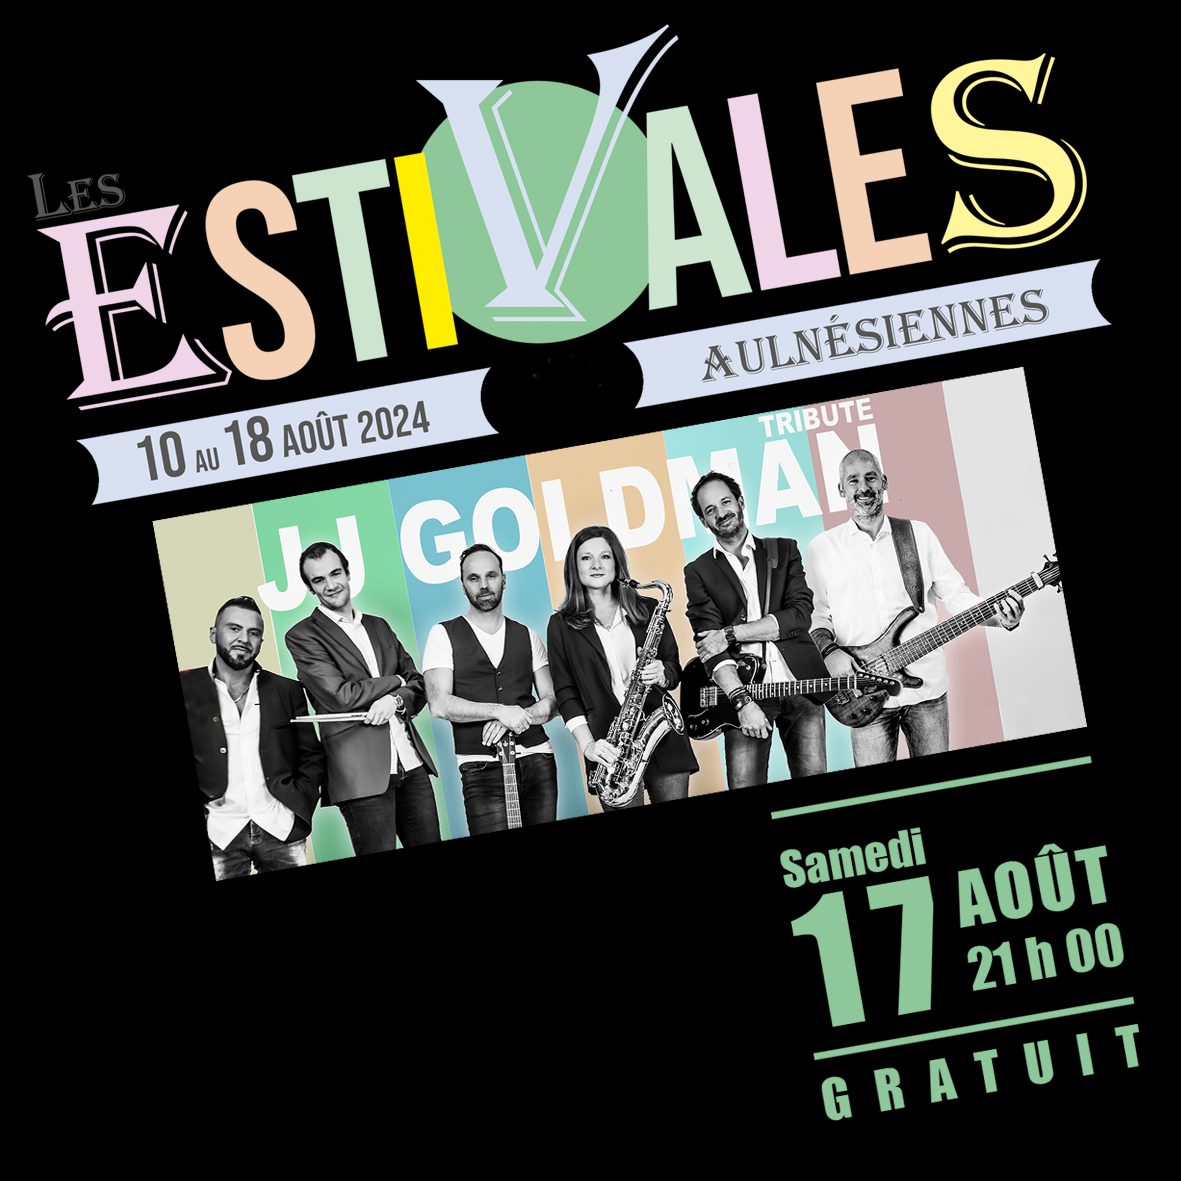 Les Estivales Aulnésiennes - Concert tribute JJ Goldman